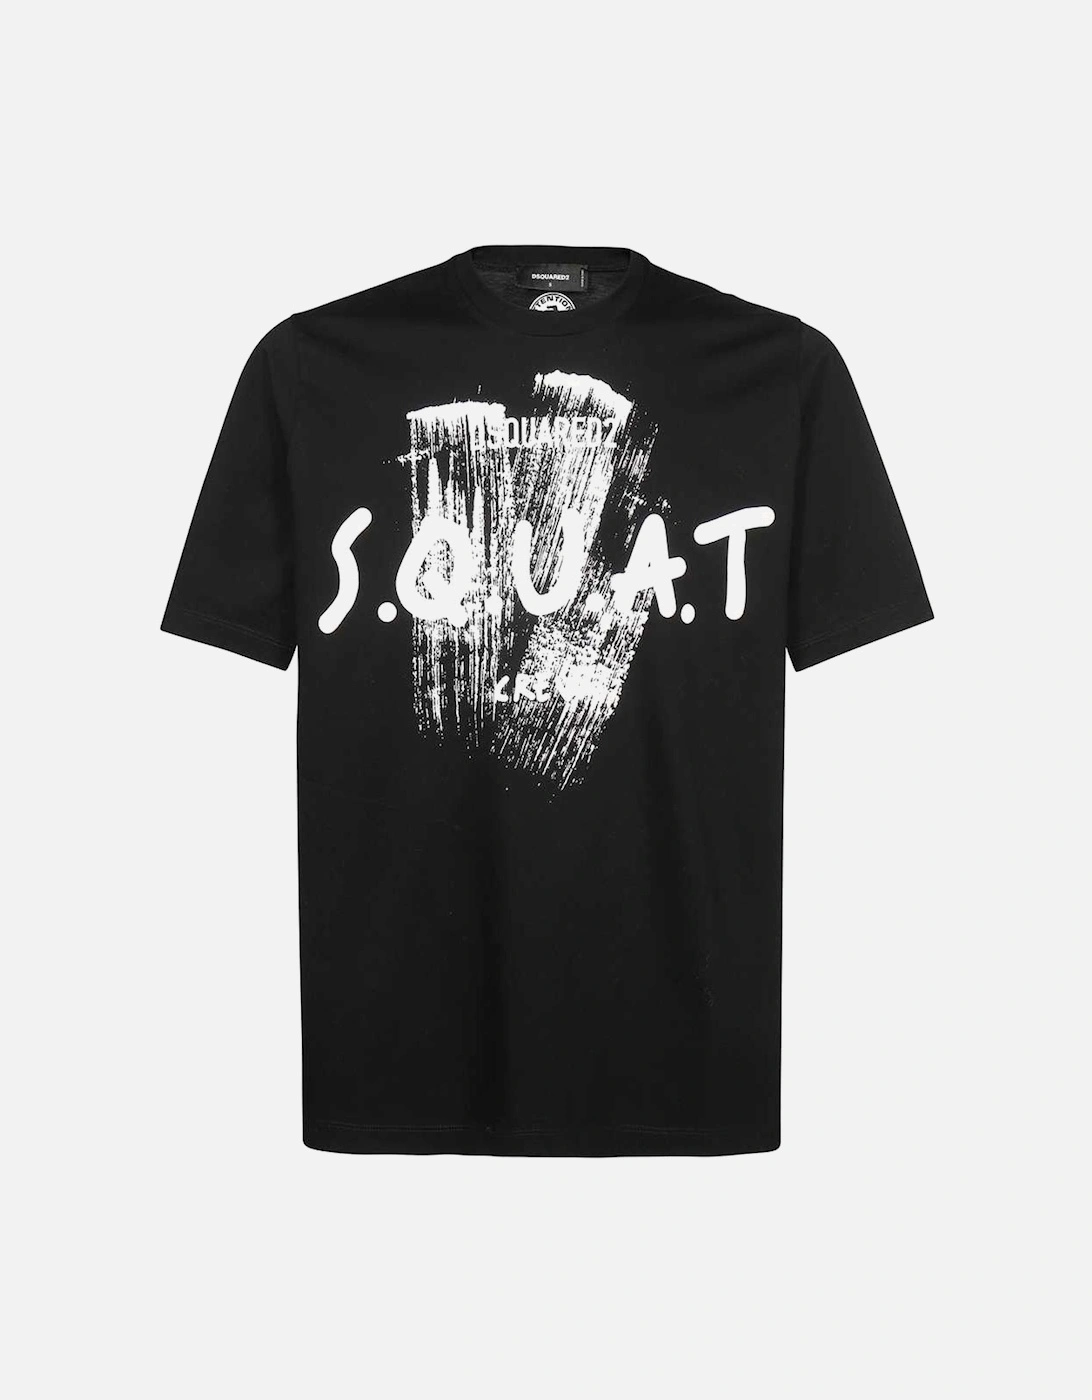 Men's Graphic Paint "S.Q.U.A.T" T-Shirt Black, 2 of 1